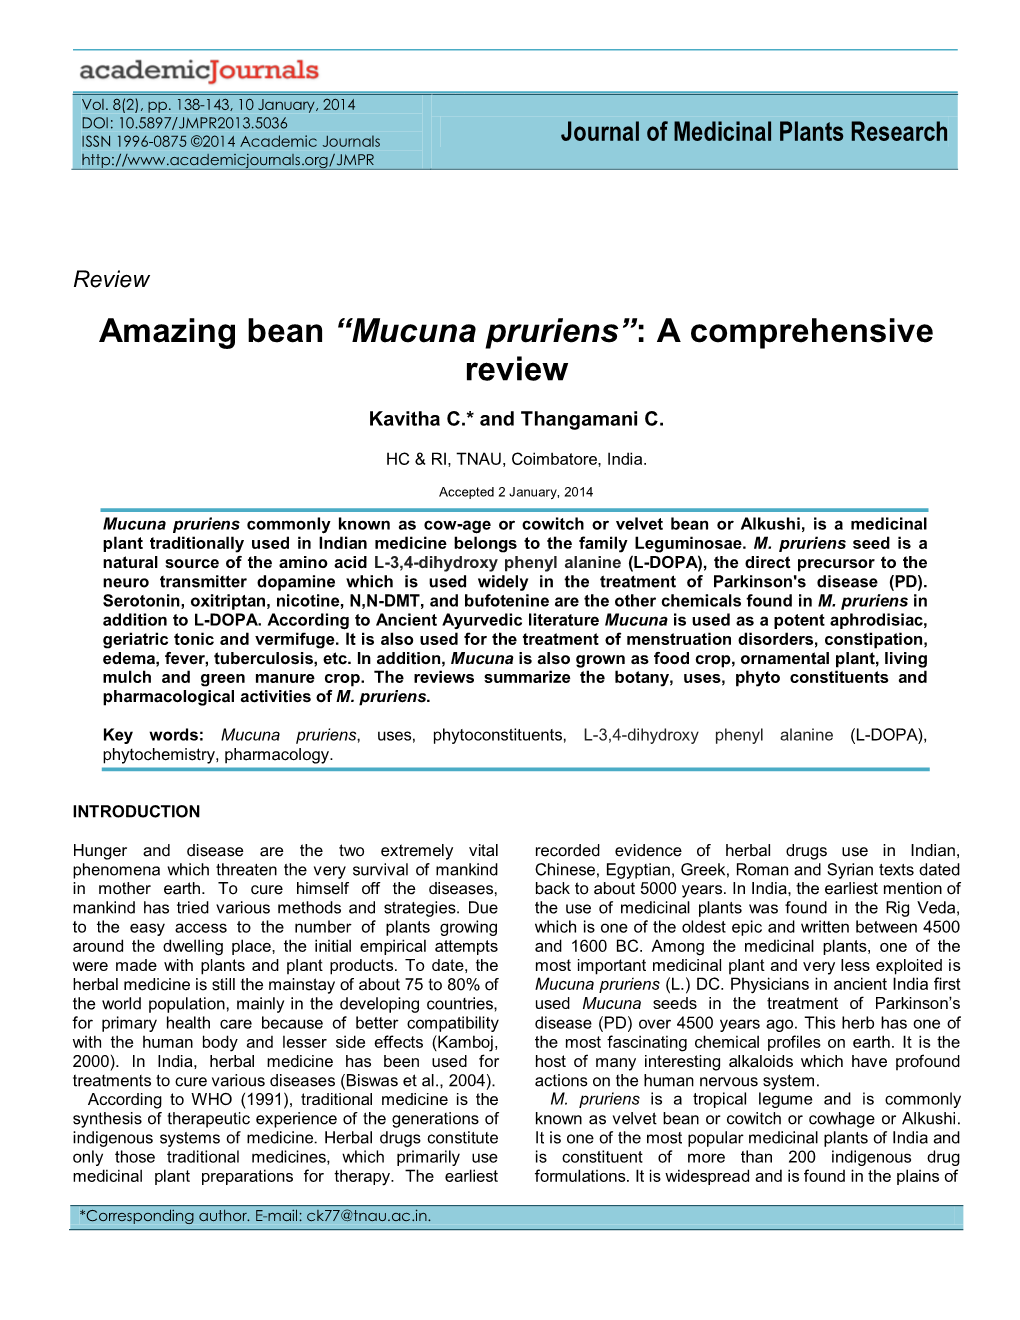 Mucuna Pruriens”: a Comprehensive Review